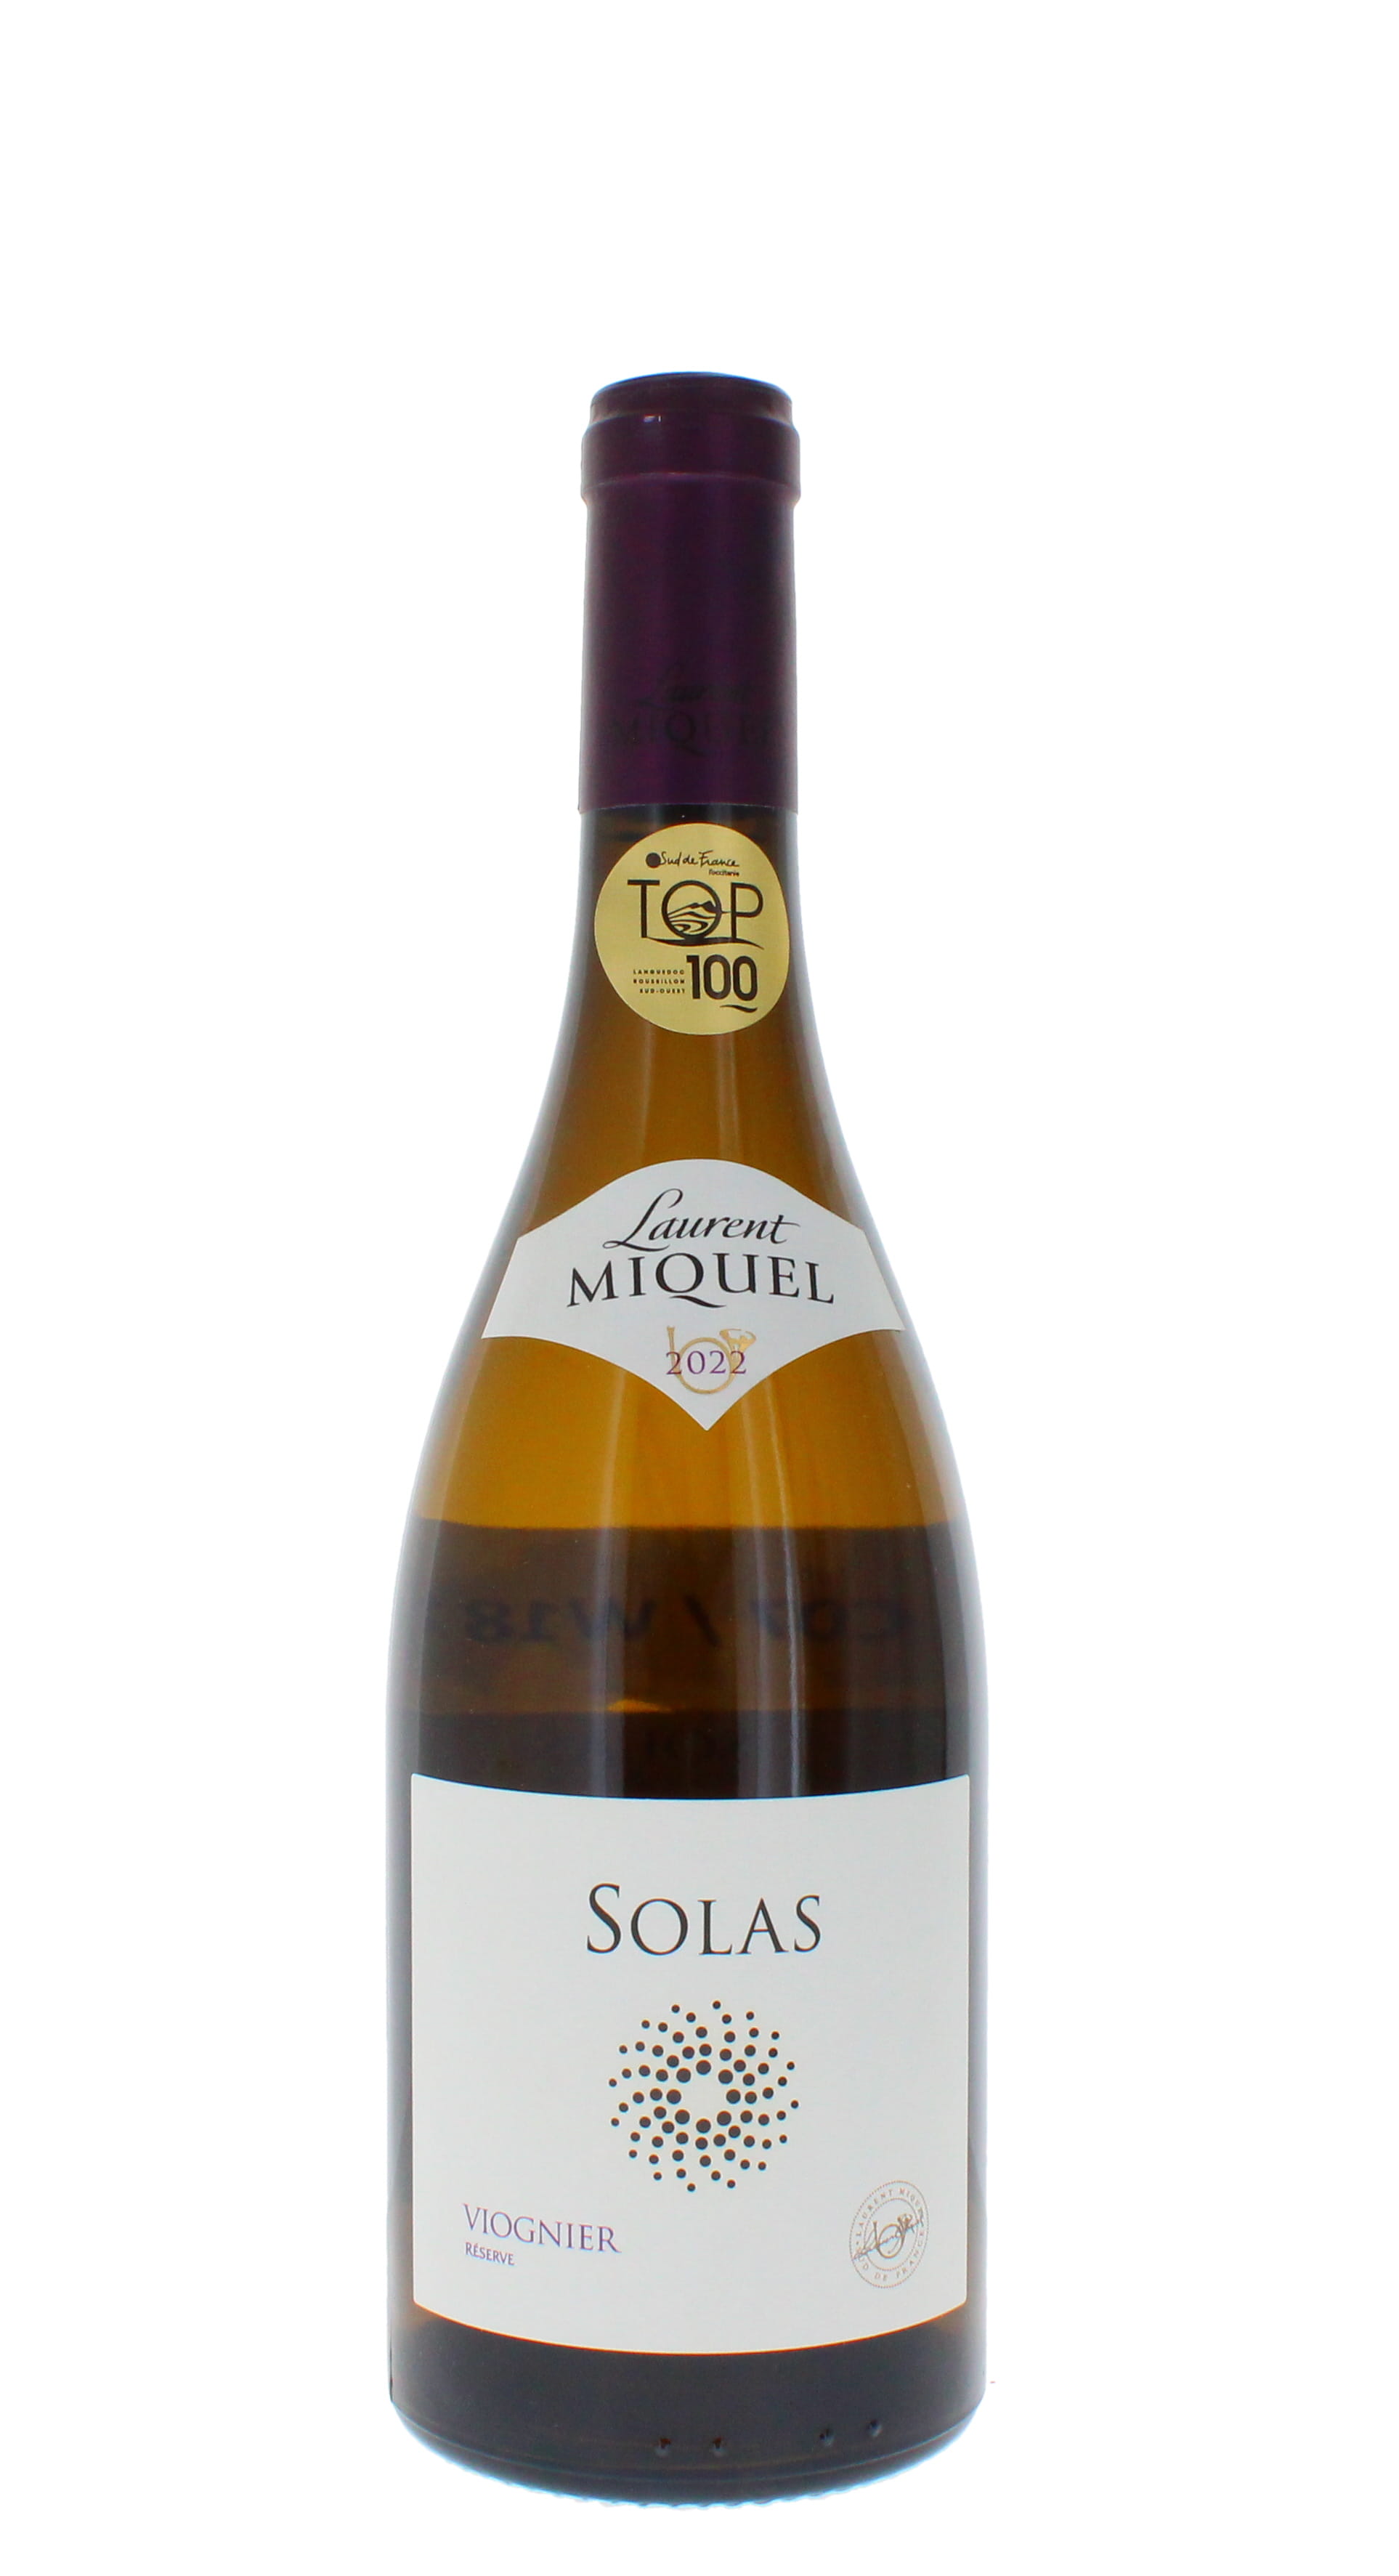 Bottle image of Laurent Miquel, Solas Viognier